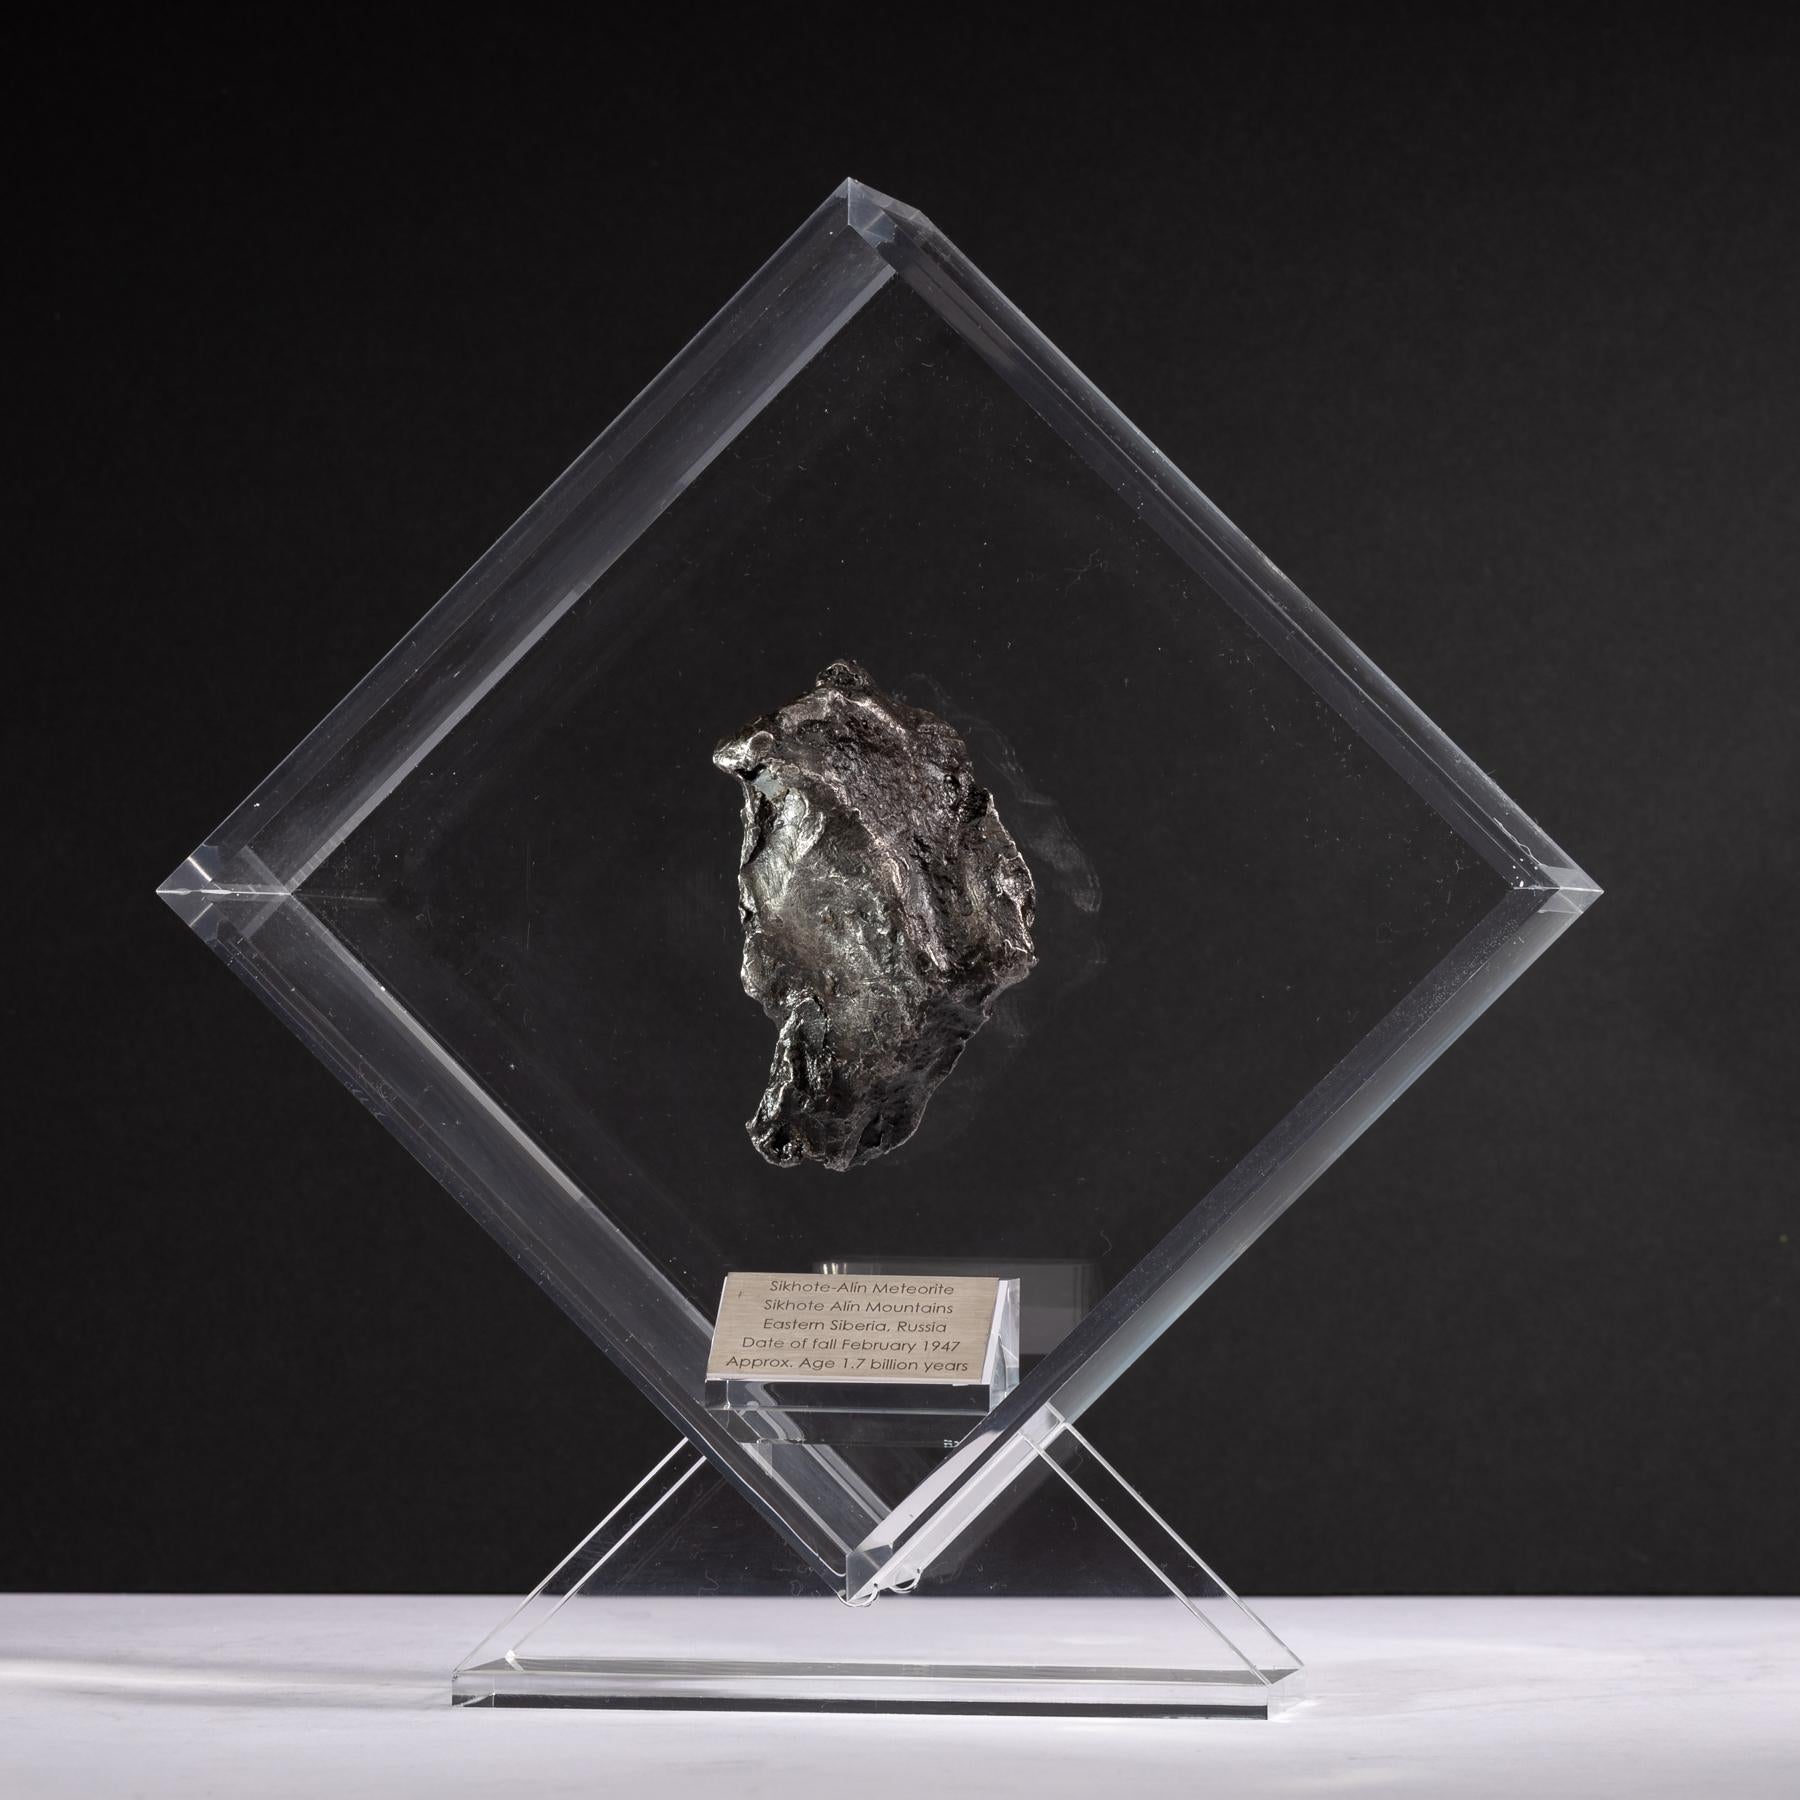 Design/One original dans un présentoir en acrylique avec un aimant donnant l'impression que la météorite flotte comme elle l'a fait dans l'espace pendant des années avant sa dernière visite sur Terre. 

Météorite de Sikhote Alin
Cette météorite